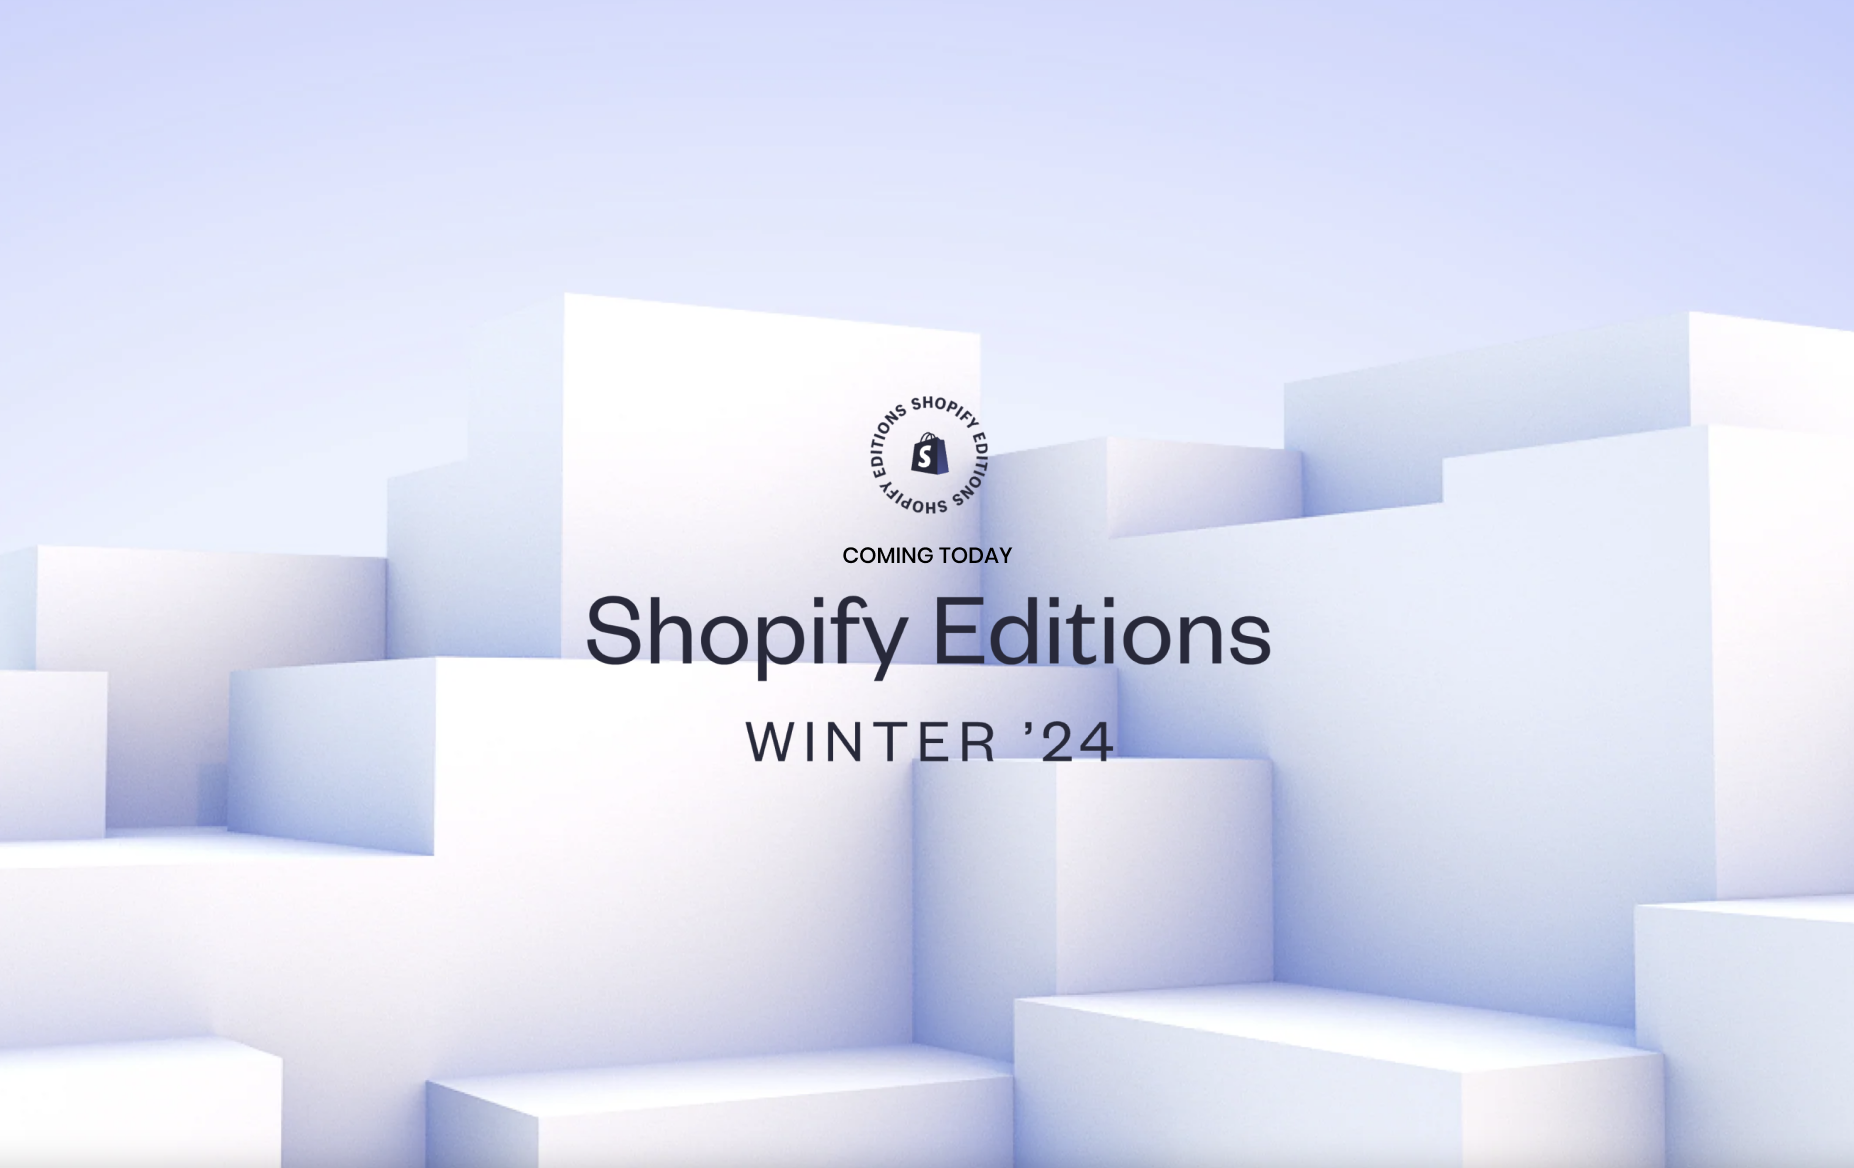 Shopify Editions Winter '24: A Glimpse into E-Commerce Evolution